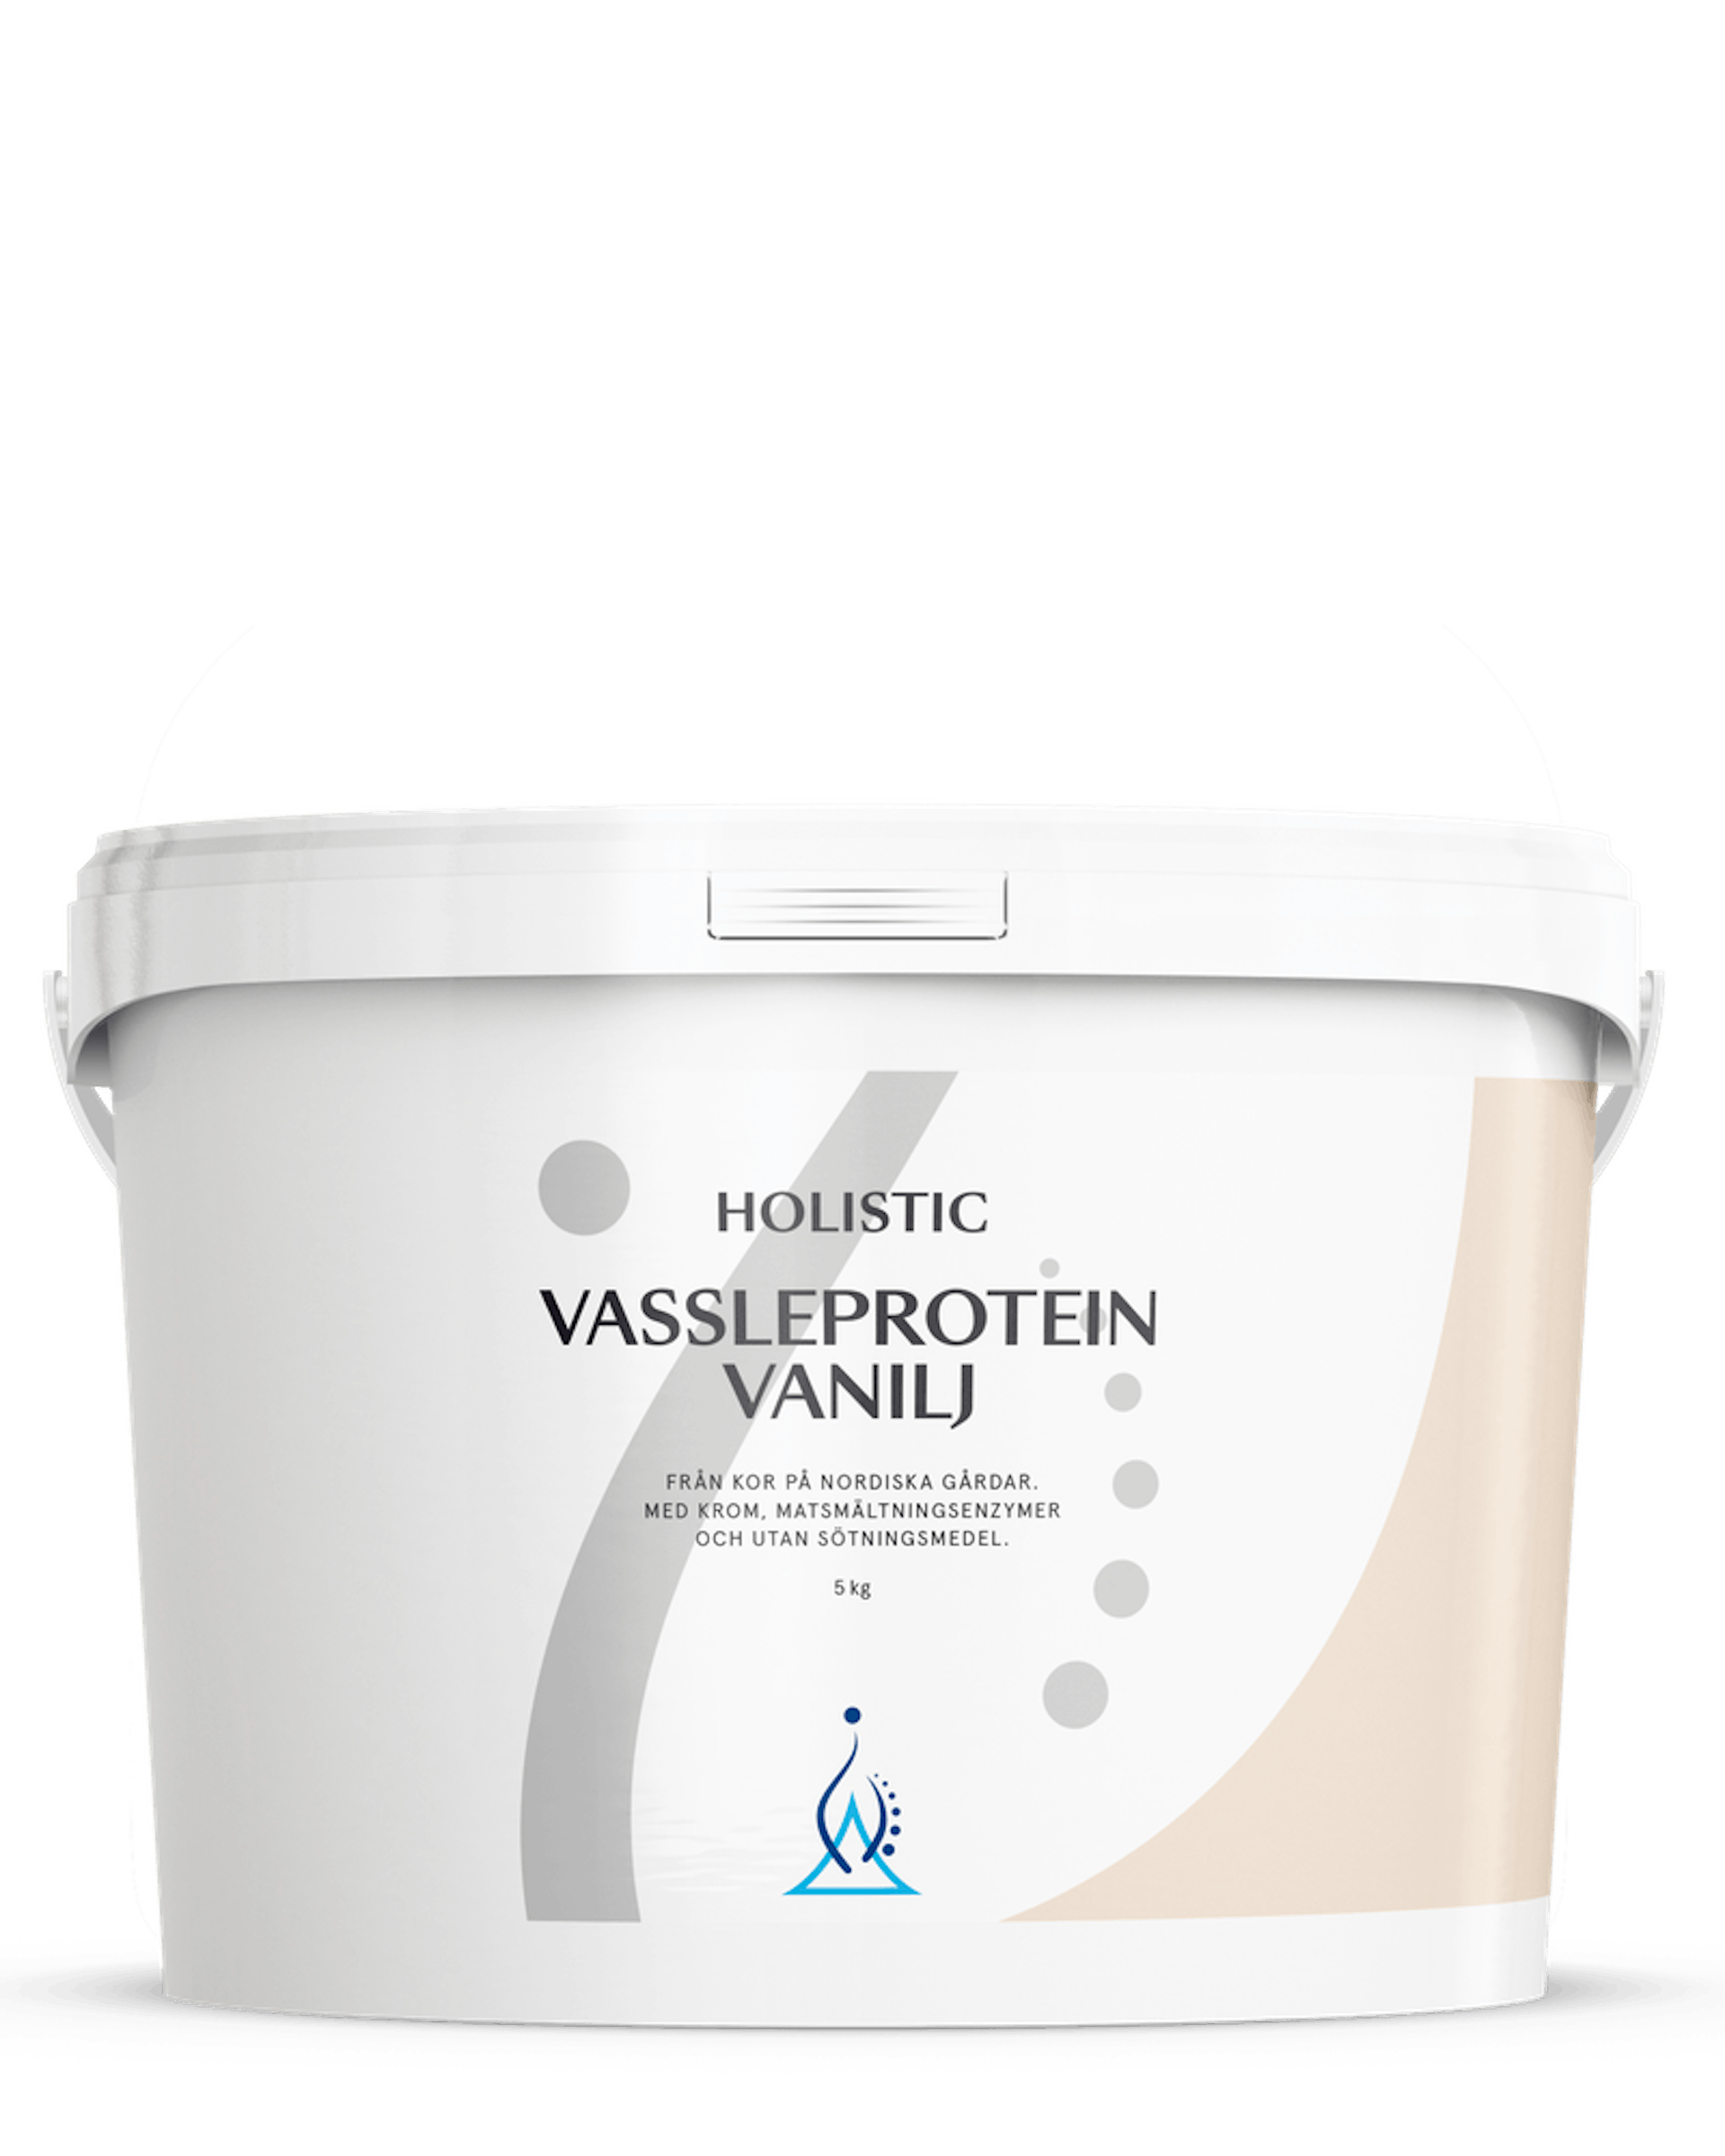 Vassleprotein vanilj, 5 kg